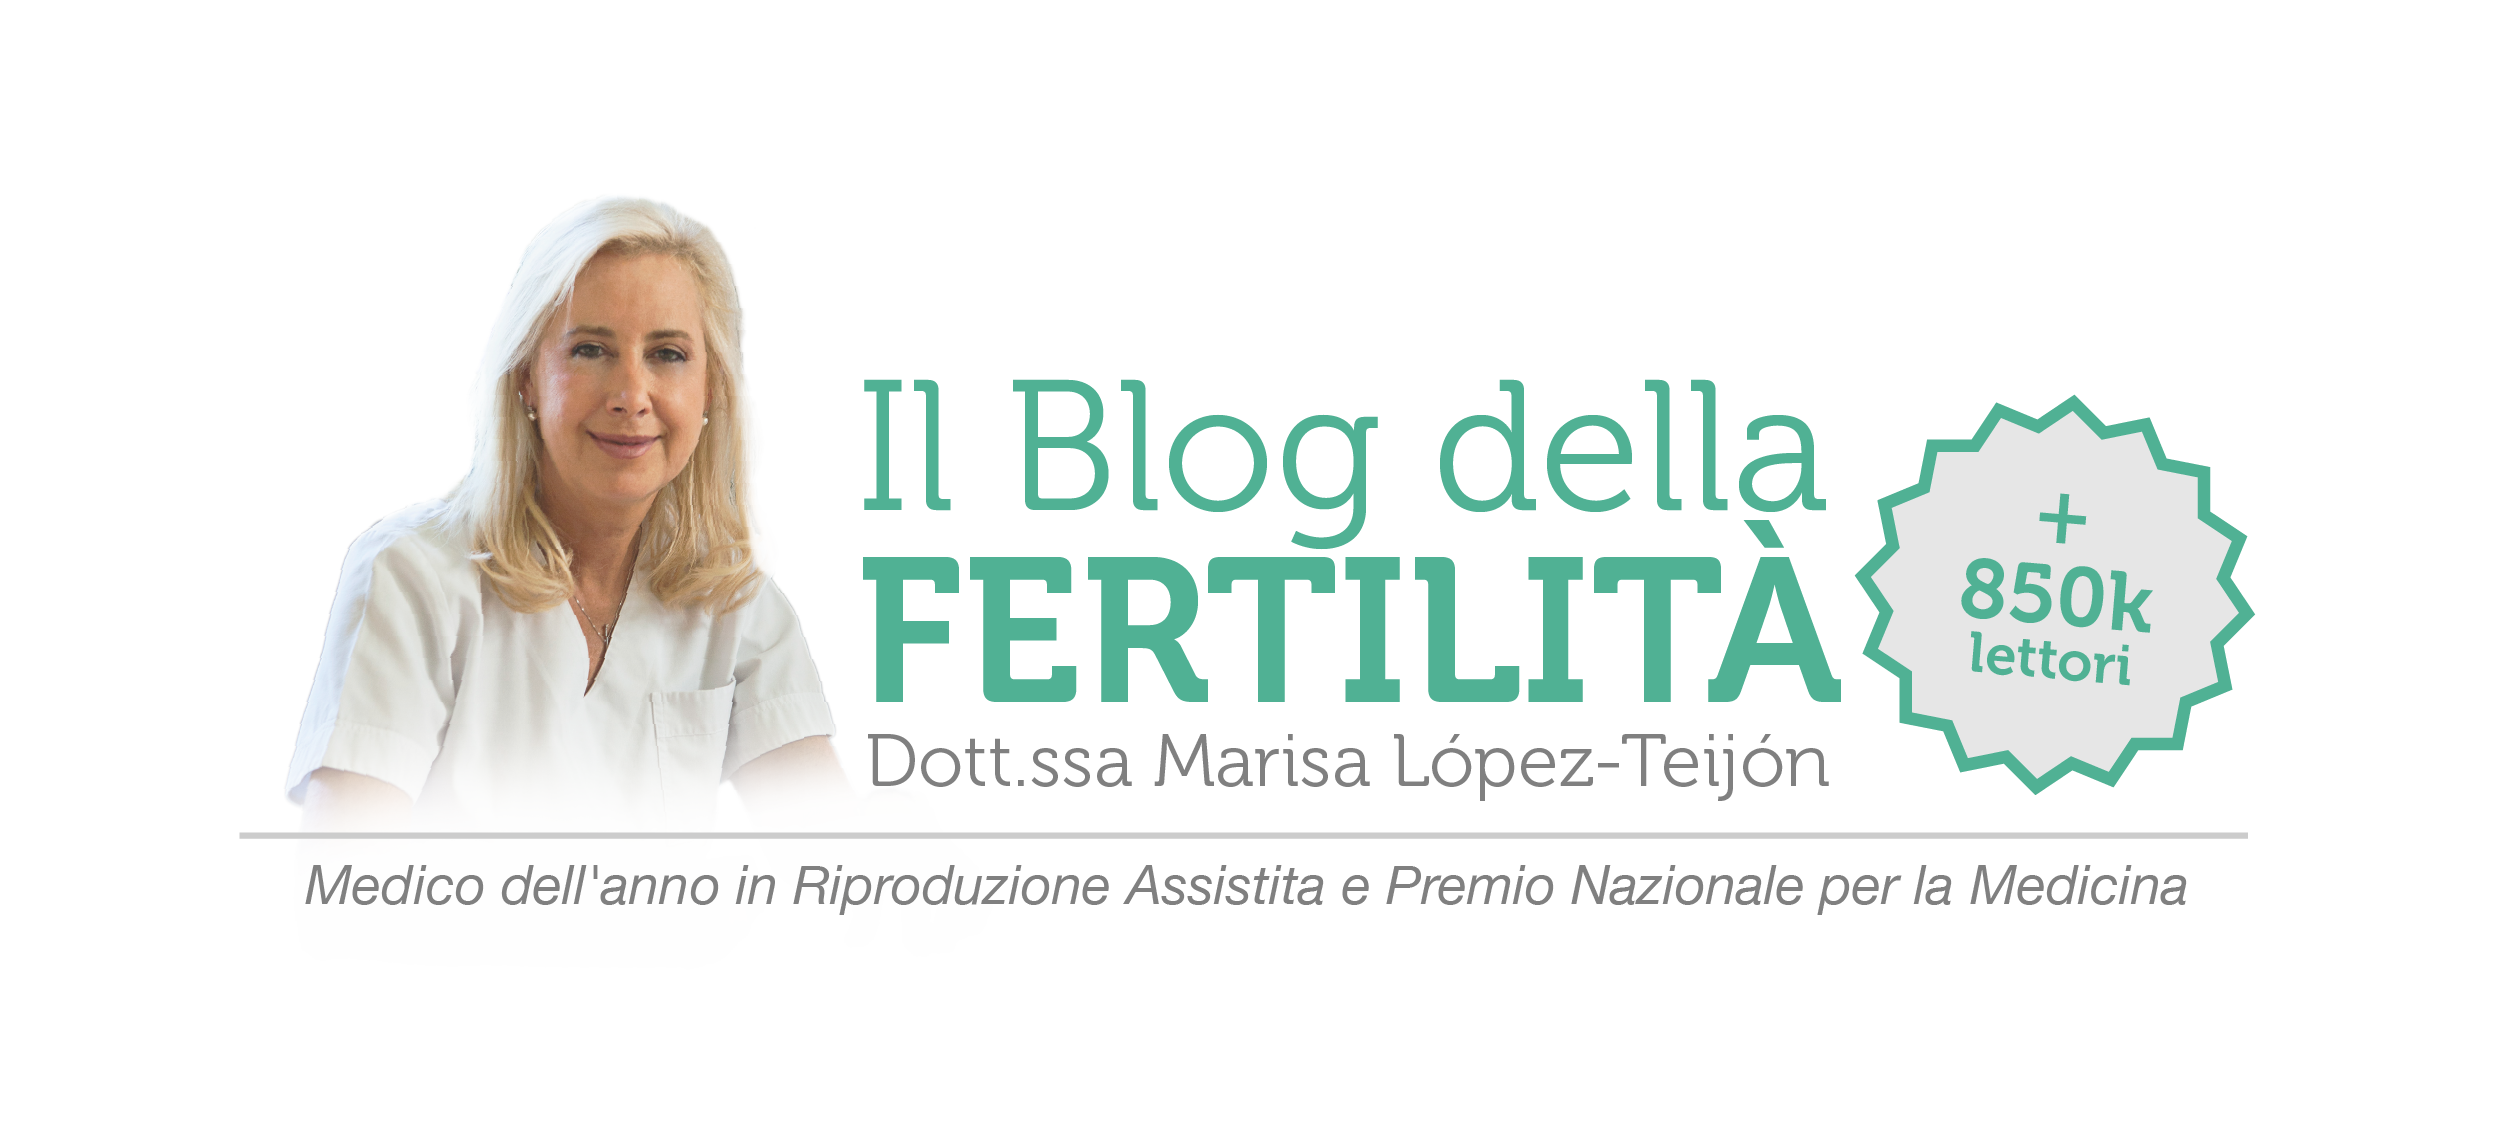 Il blog della fertilità